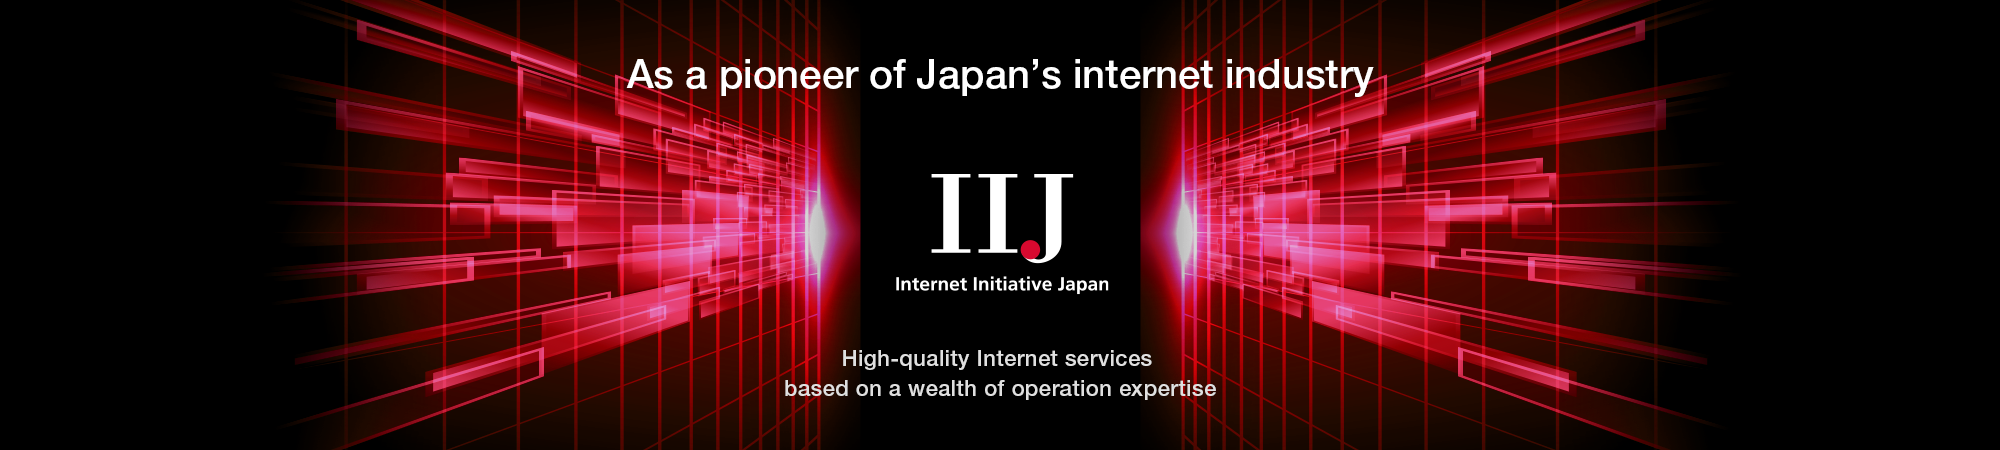 As a pioneer of Japan's internet industory